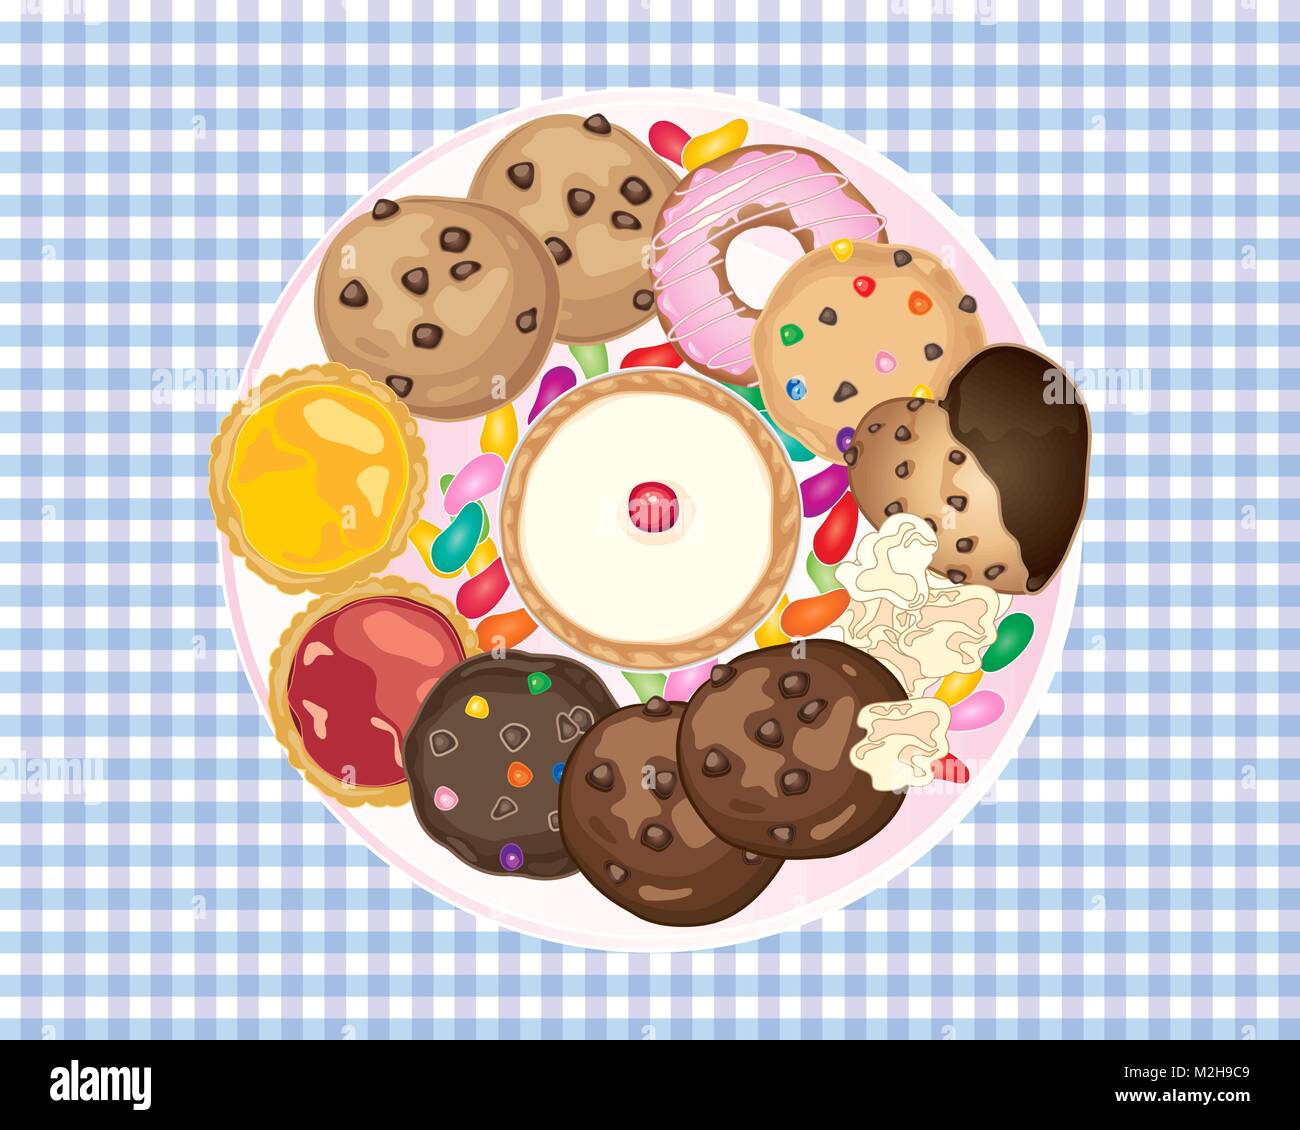 Un vecteur illustration en eps 10 format d'une vue aérienne d'une plaque avec une sélection de tartes et gâteaux cookies sur une nappe en vichy bleu Illustration de Vecteur